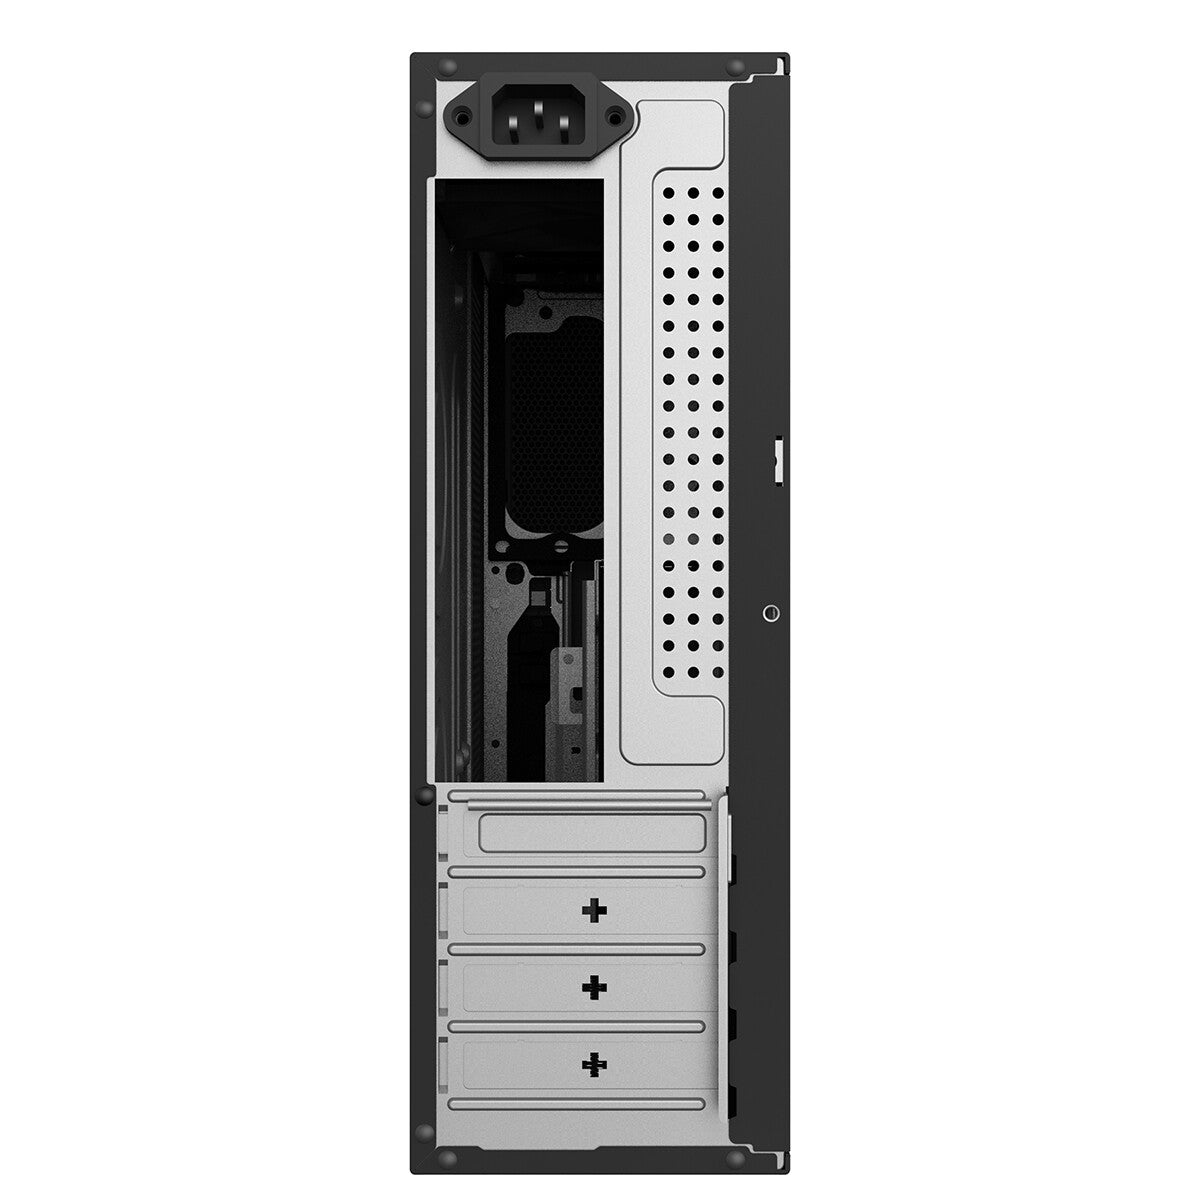 CiT SO14B computer case Micro-ATX Black 300 W